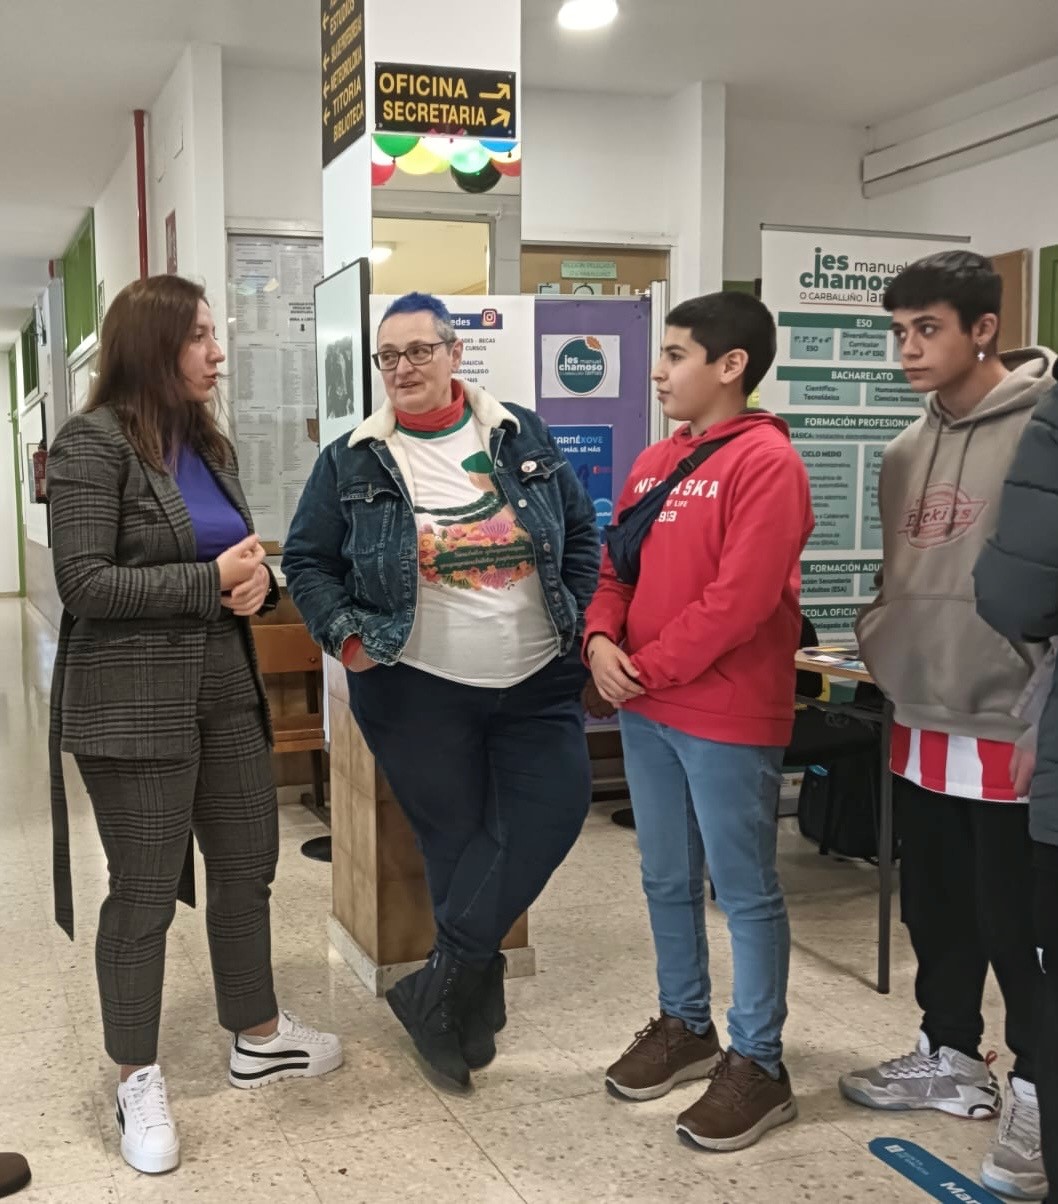 A Xunta achega ao alumnado do IES Manuel Chamoso Lamas propostas do seu interese a través dun punto de información xuvenil